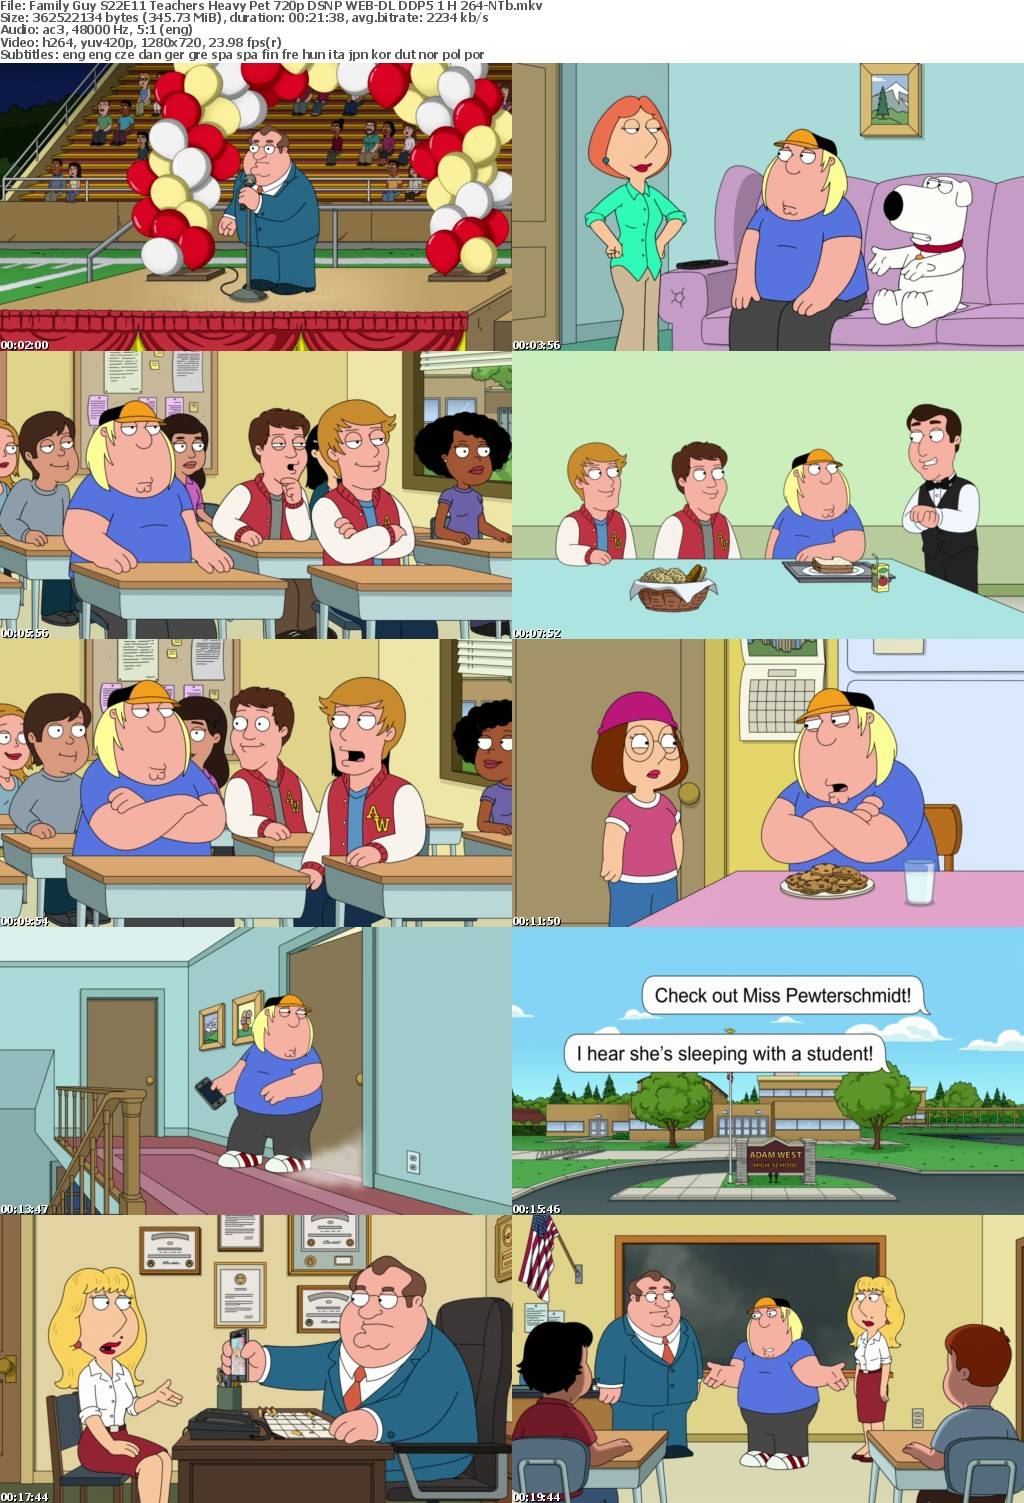 Family Guy S22E11 Teachers Heavy Pet 720p DSNP WEB-DL DDP5 1 H 264-NTb